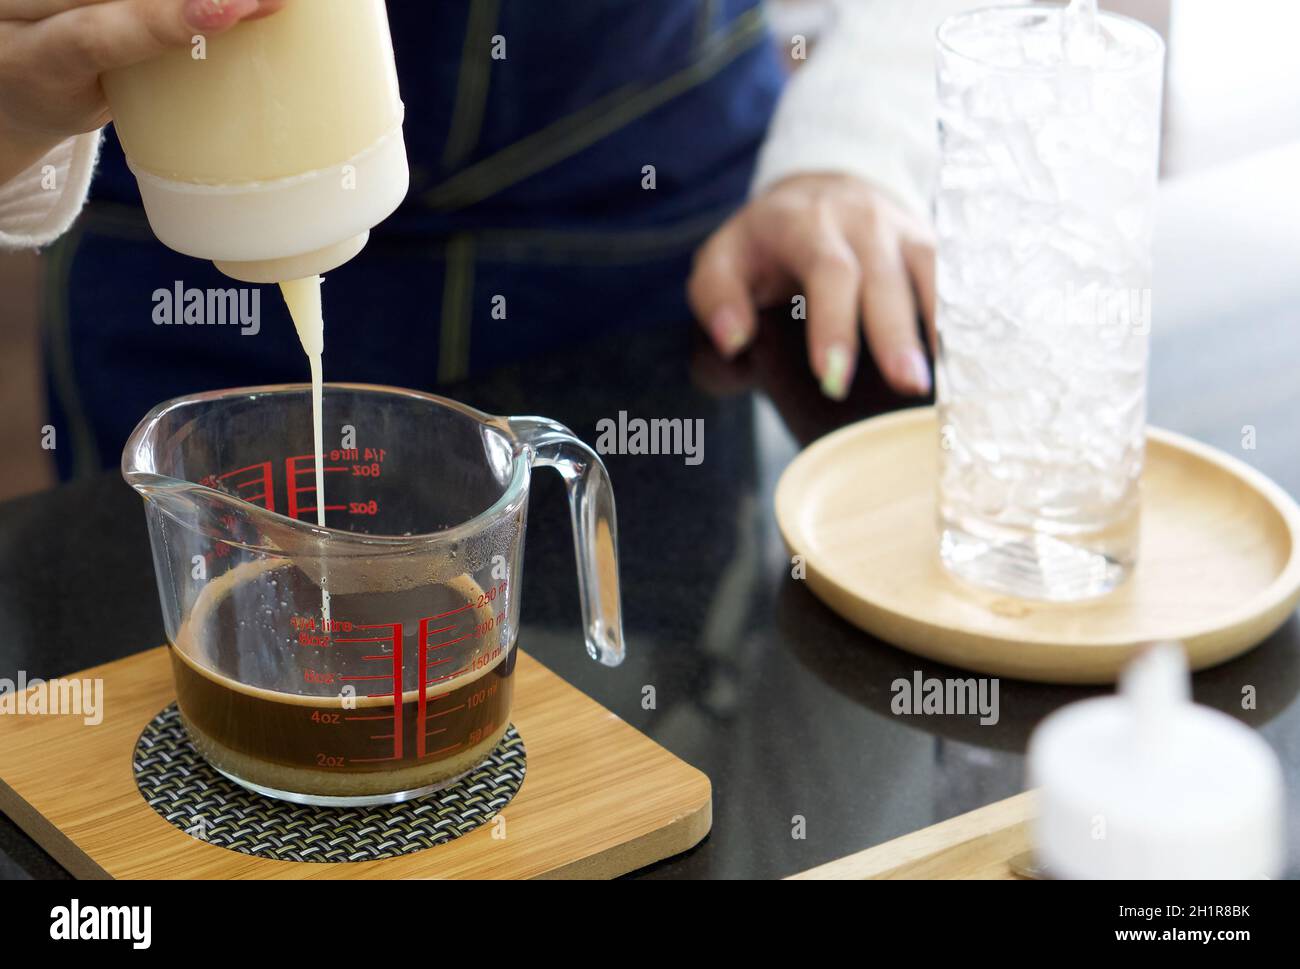 Un barista asiático exprime la leche condensada de una botella de plástico en una taza medidora de café. Ambiente matutino en una cafetería. Foto de stock